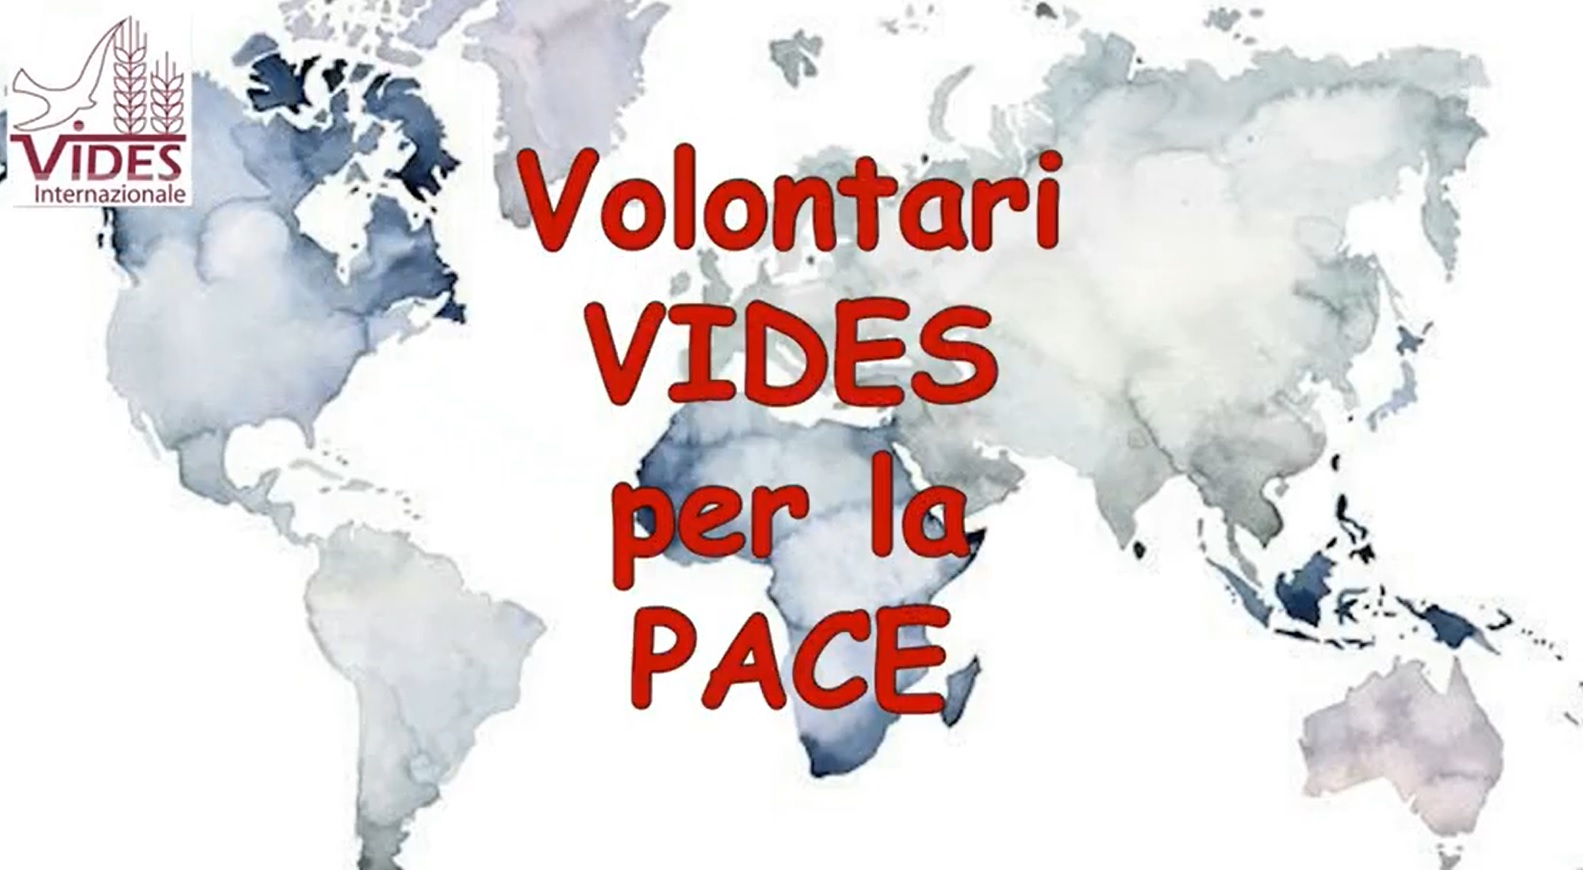 Los voluntarios de VIDES Internacional por la paz